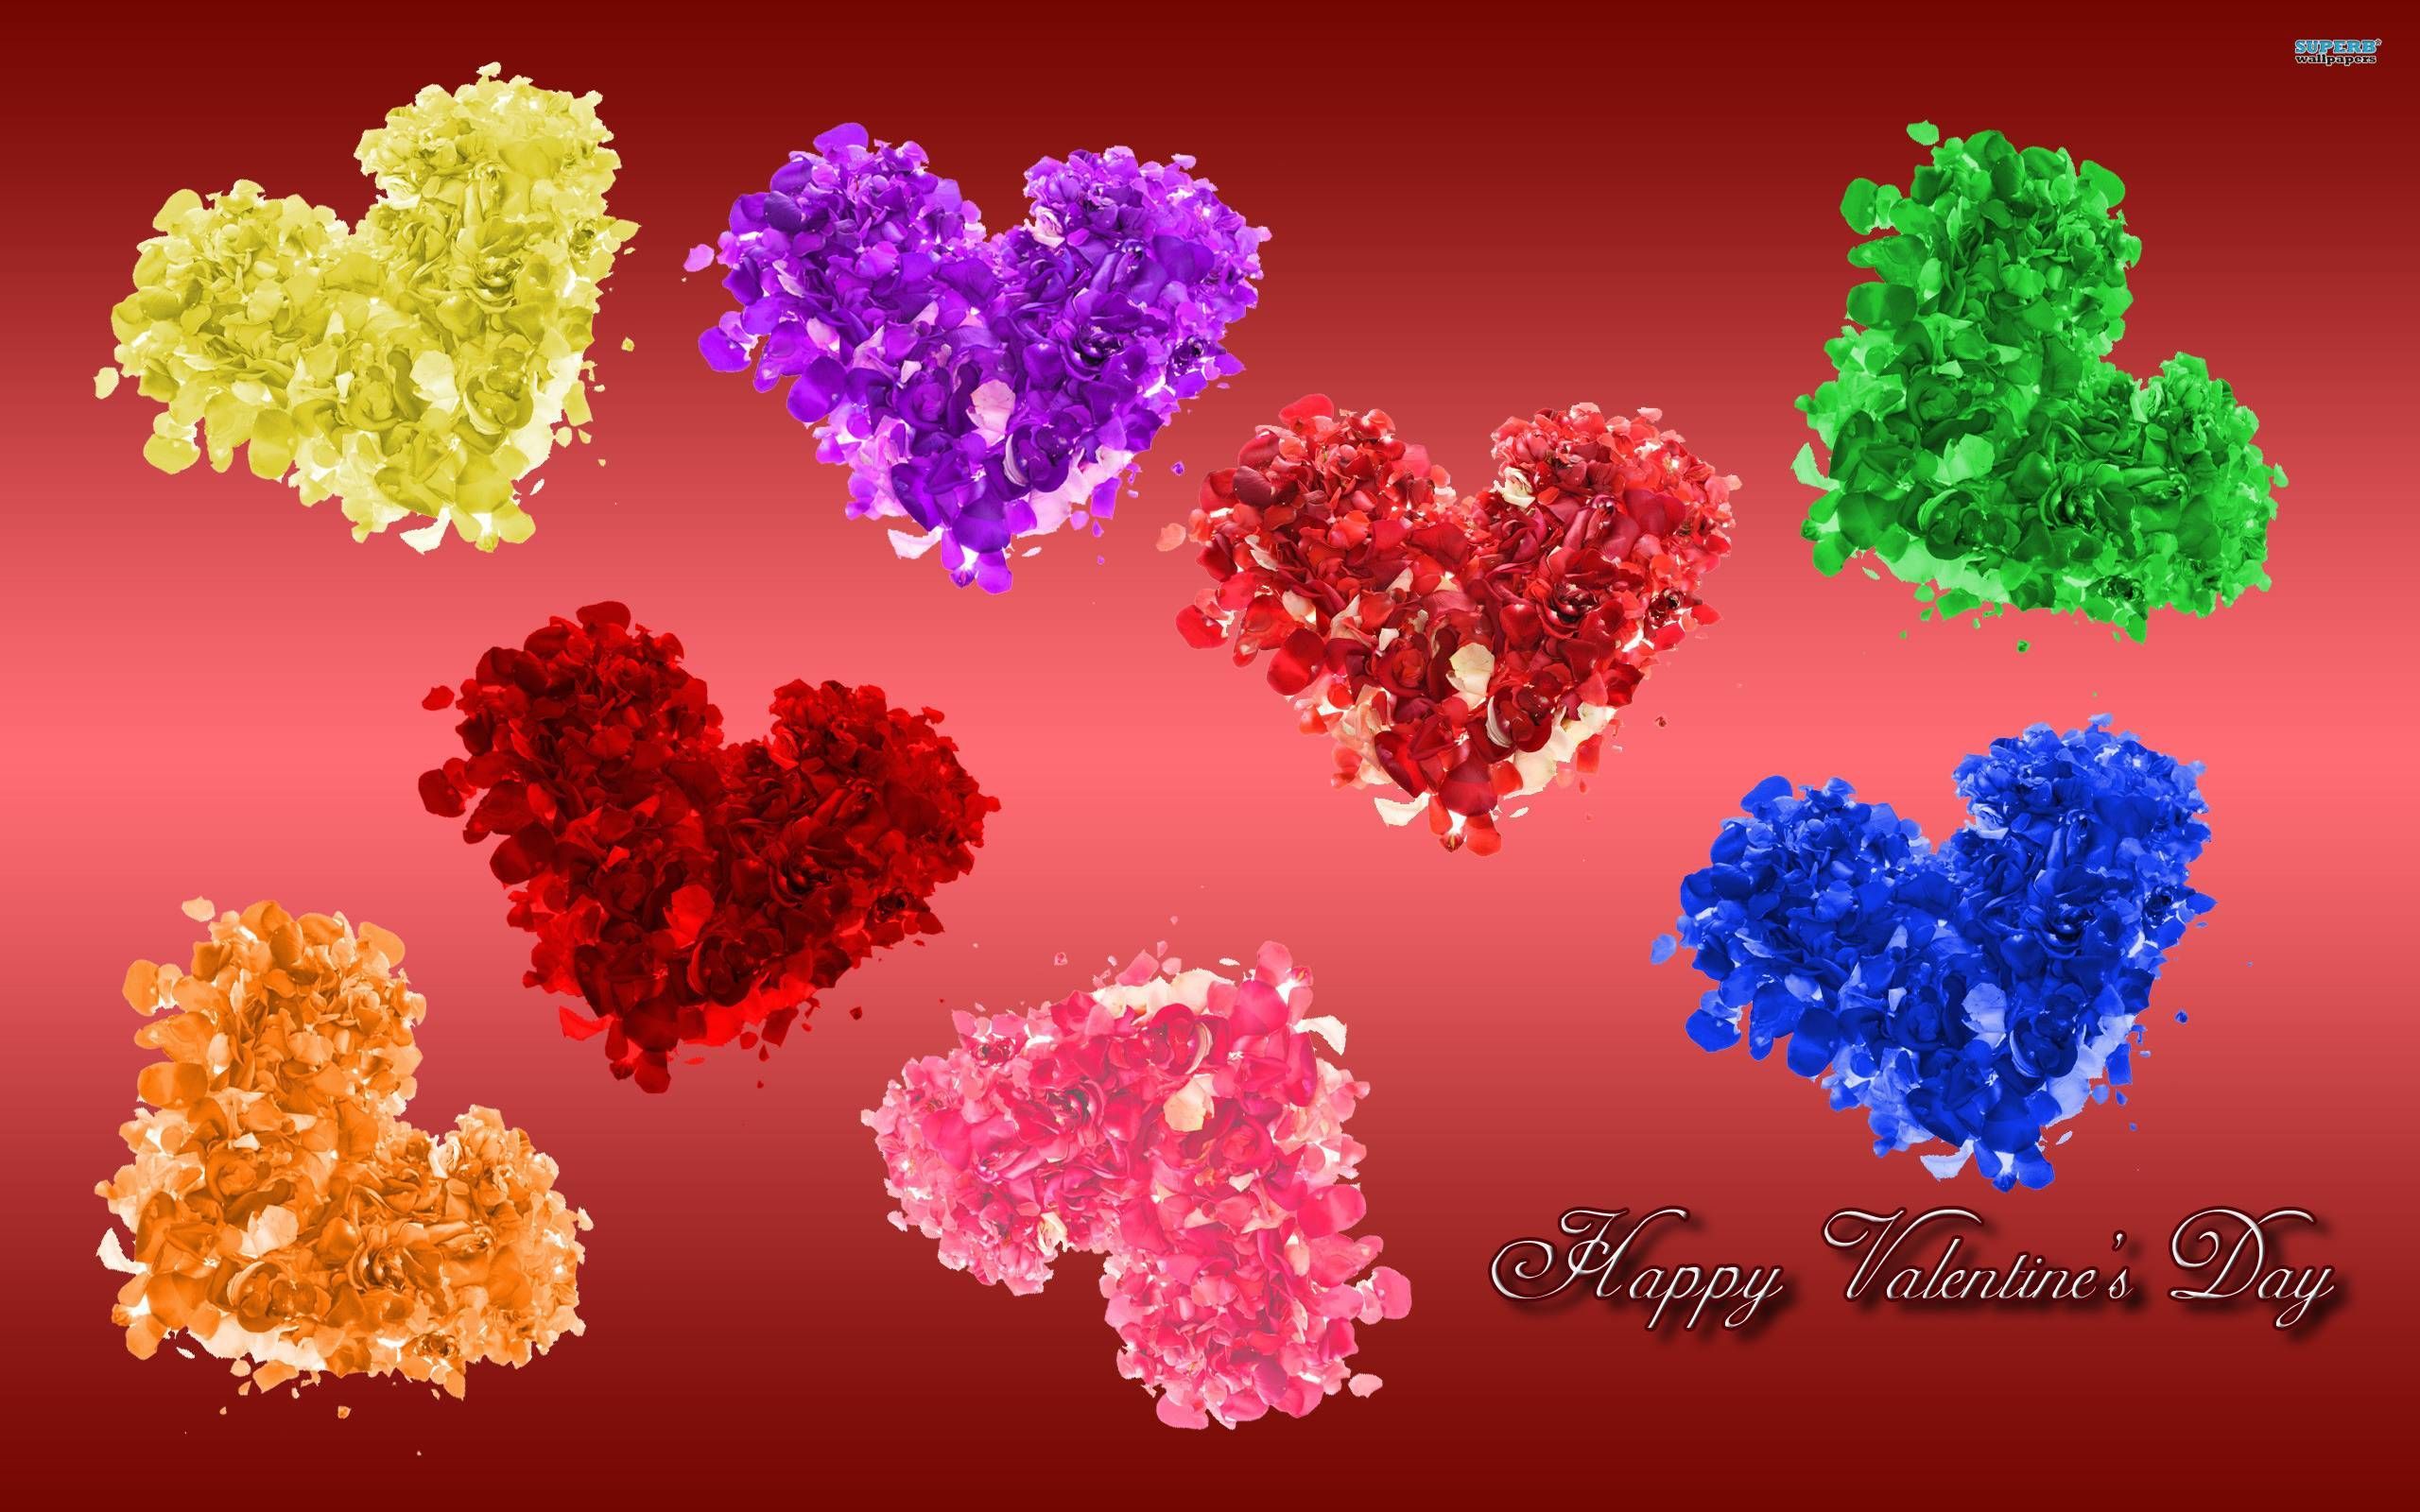 Happy Valentines Day Desktop Wallpaper High Quality Resolution. Valentines wallpaper, Valentine background, Disney valentines